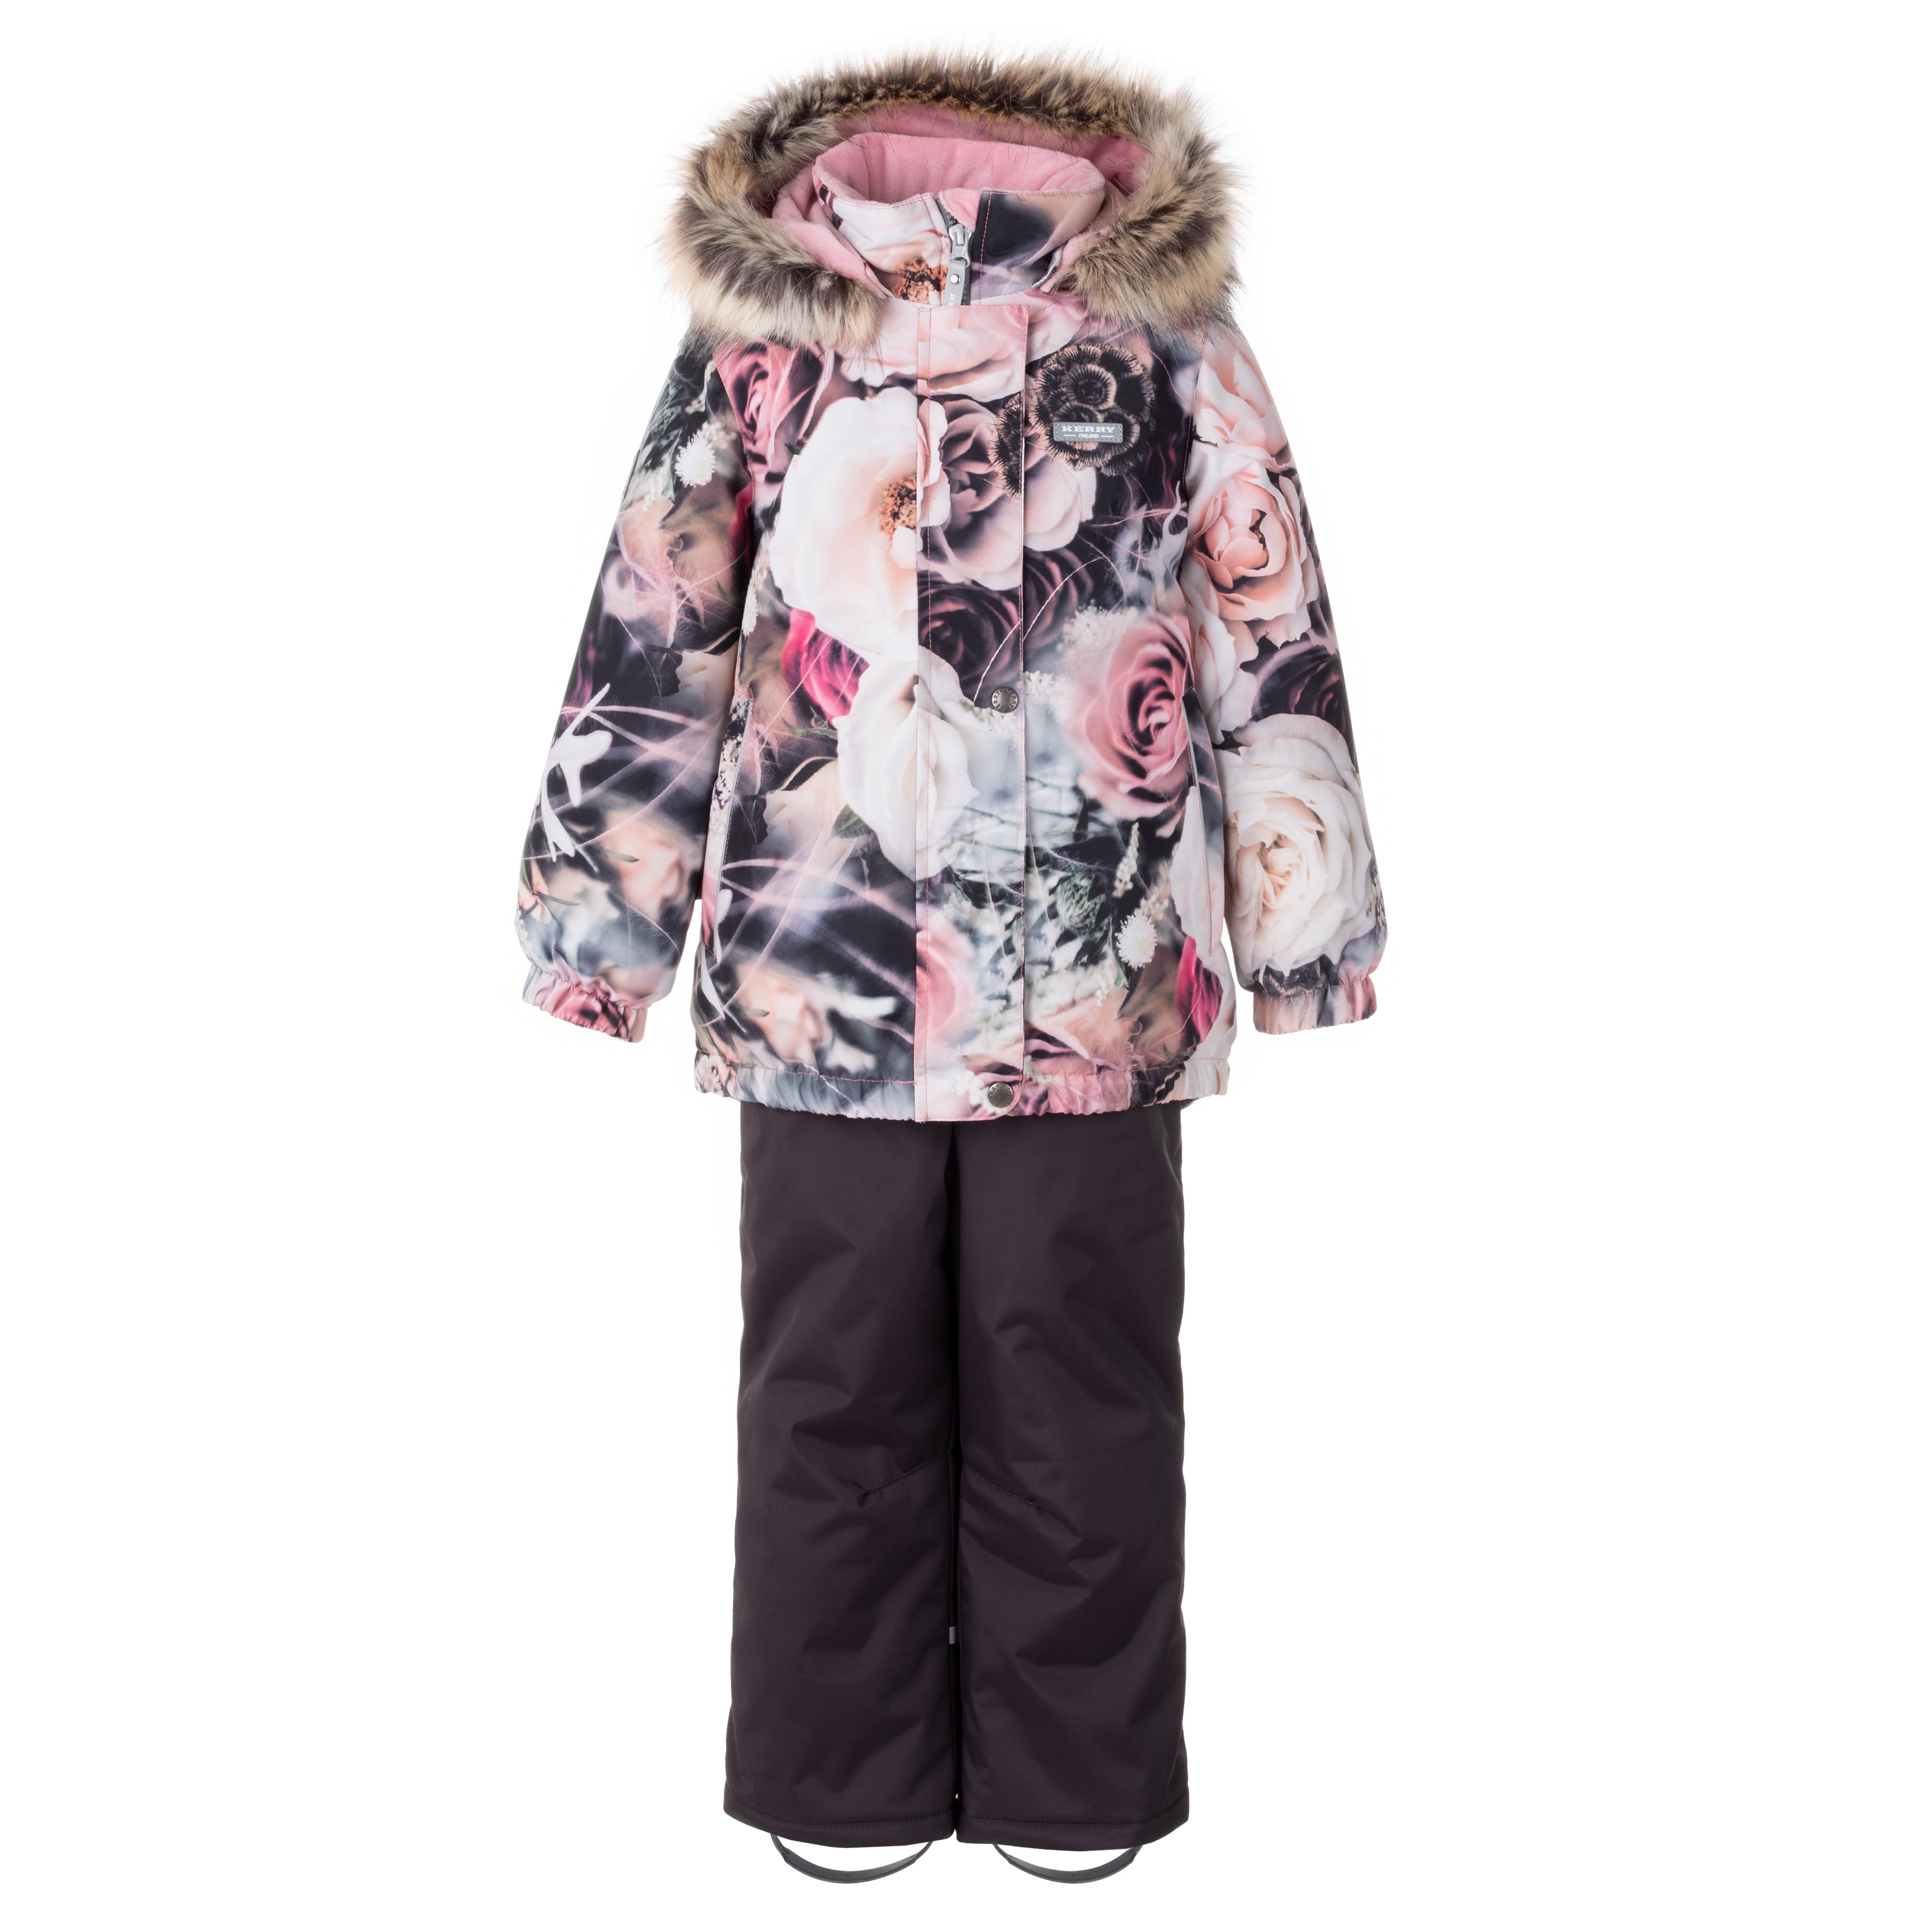 Комплект верхней одежды KERRY K23420 A, бежевый, розовый, коричневый, 122 бежевый комбинезон с голубой отделкой marlu детский